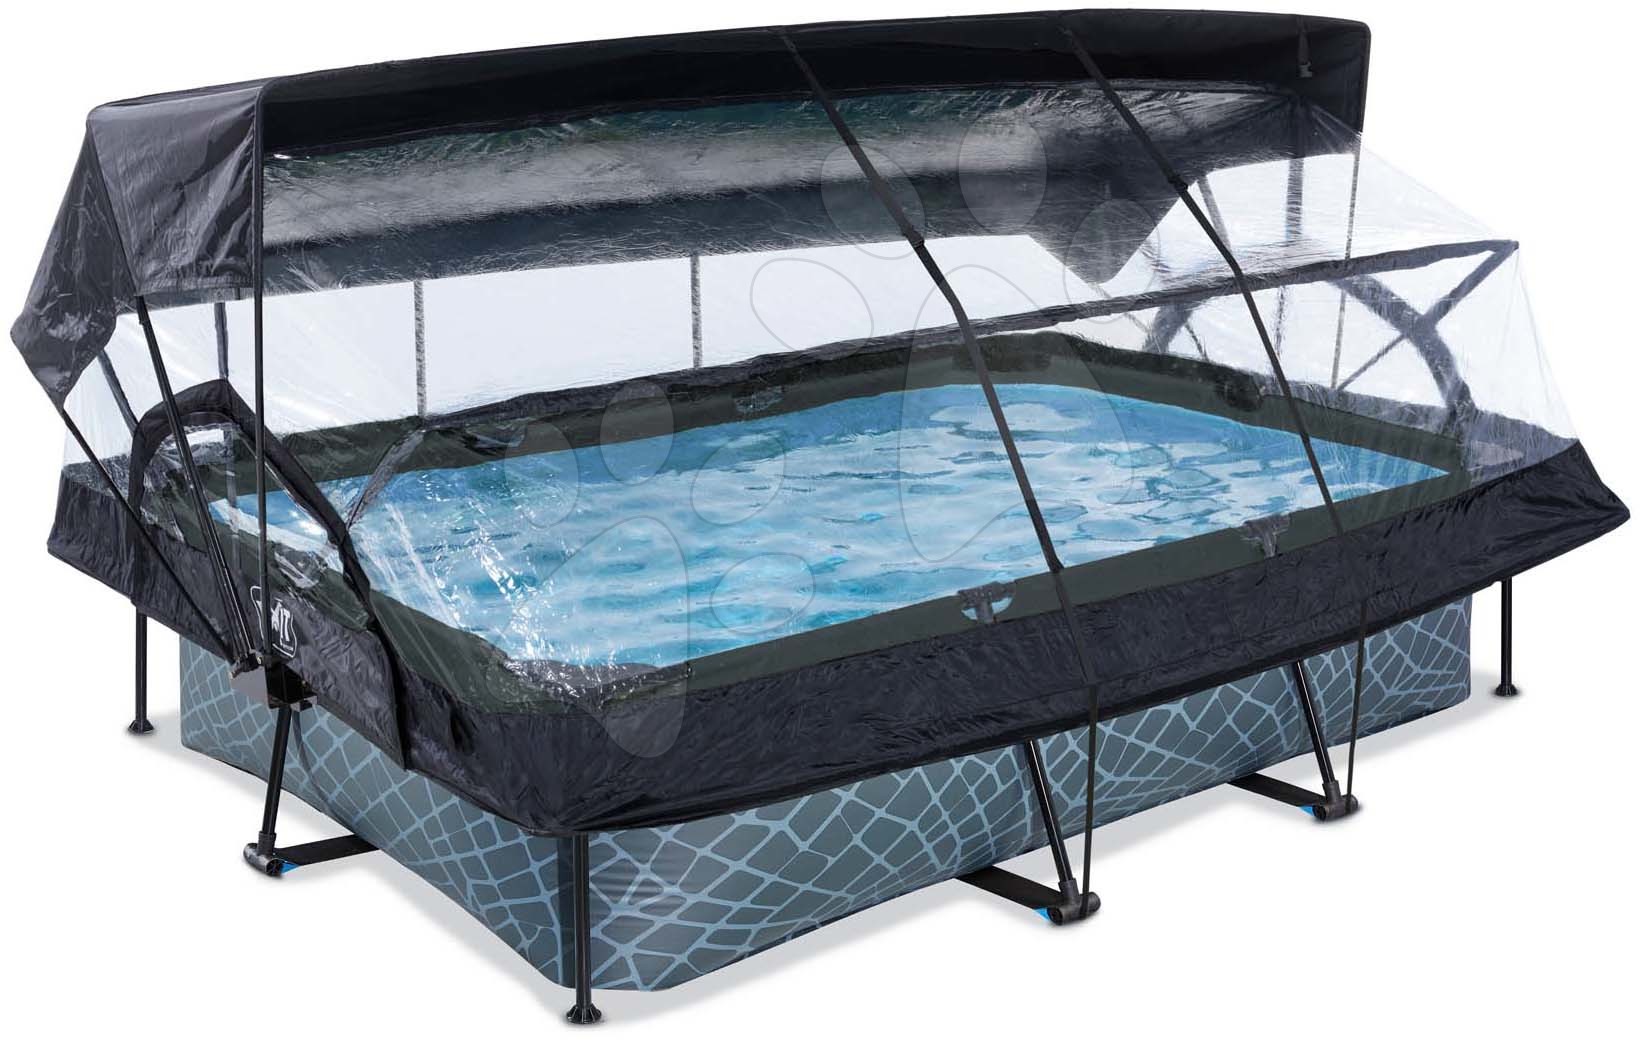 Bazén so strieškou krytom a filtráciou Stone pool Exit Toys oceľová konštrukcia 300*200*65 cm šedý od 6 rokov